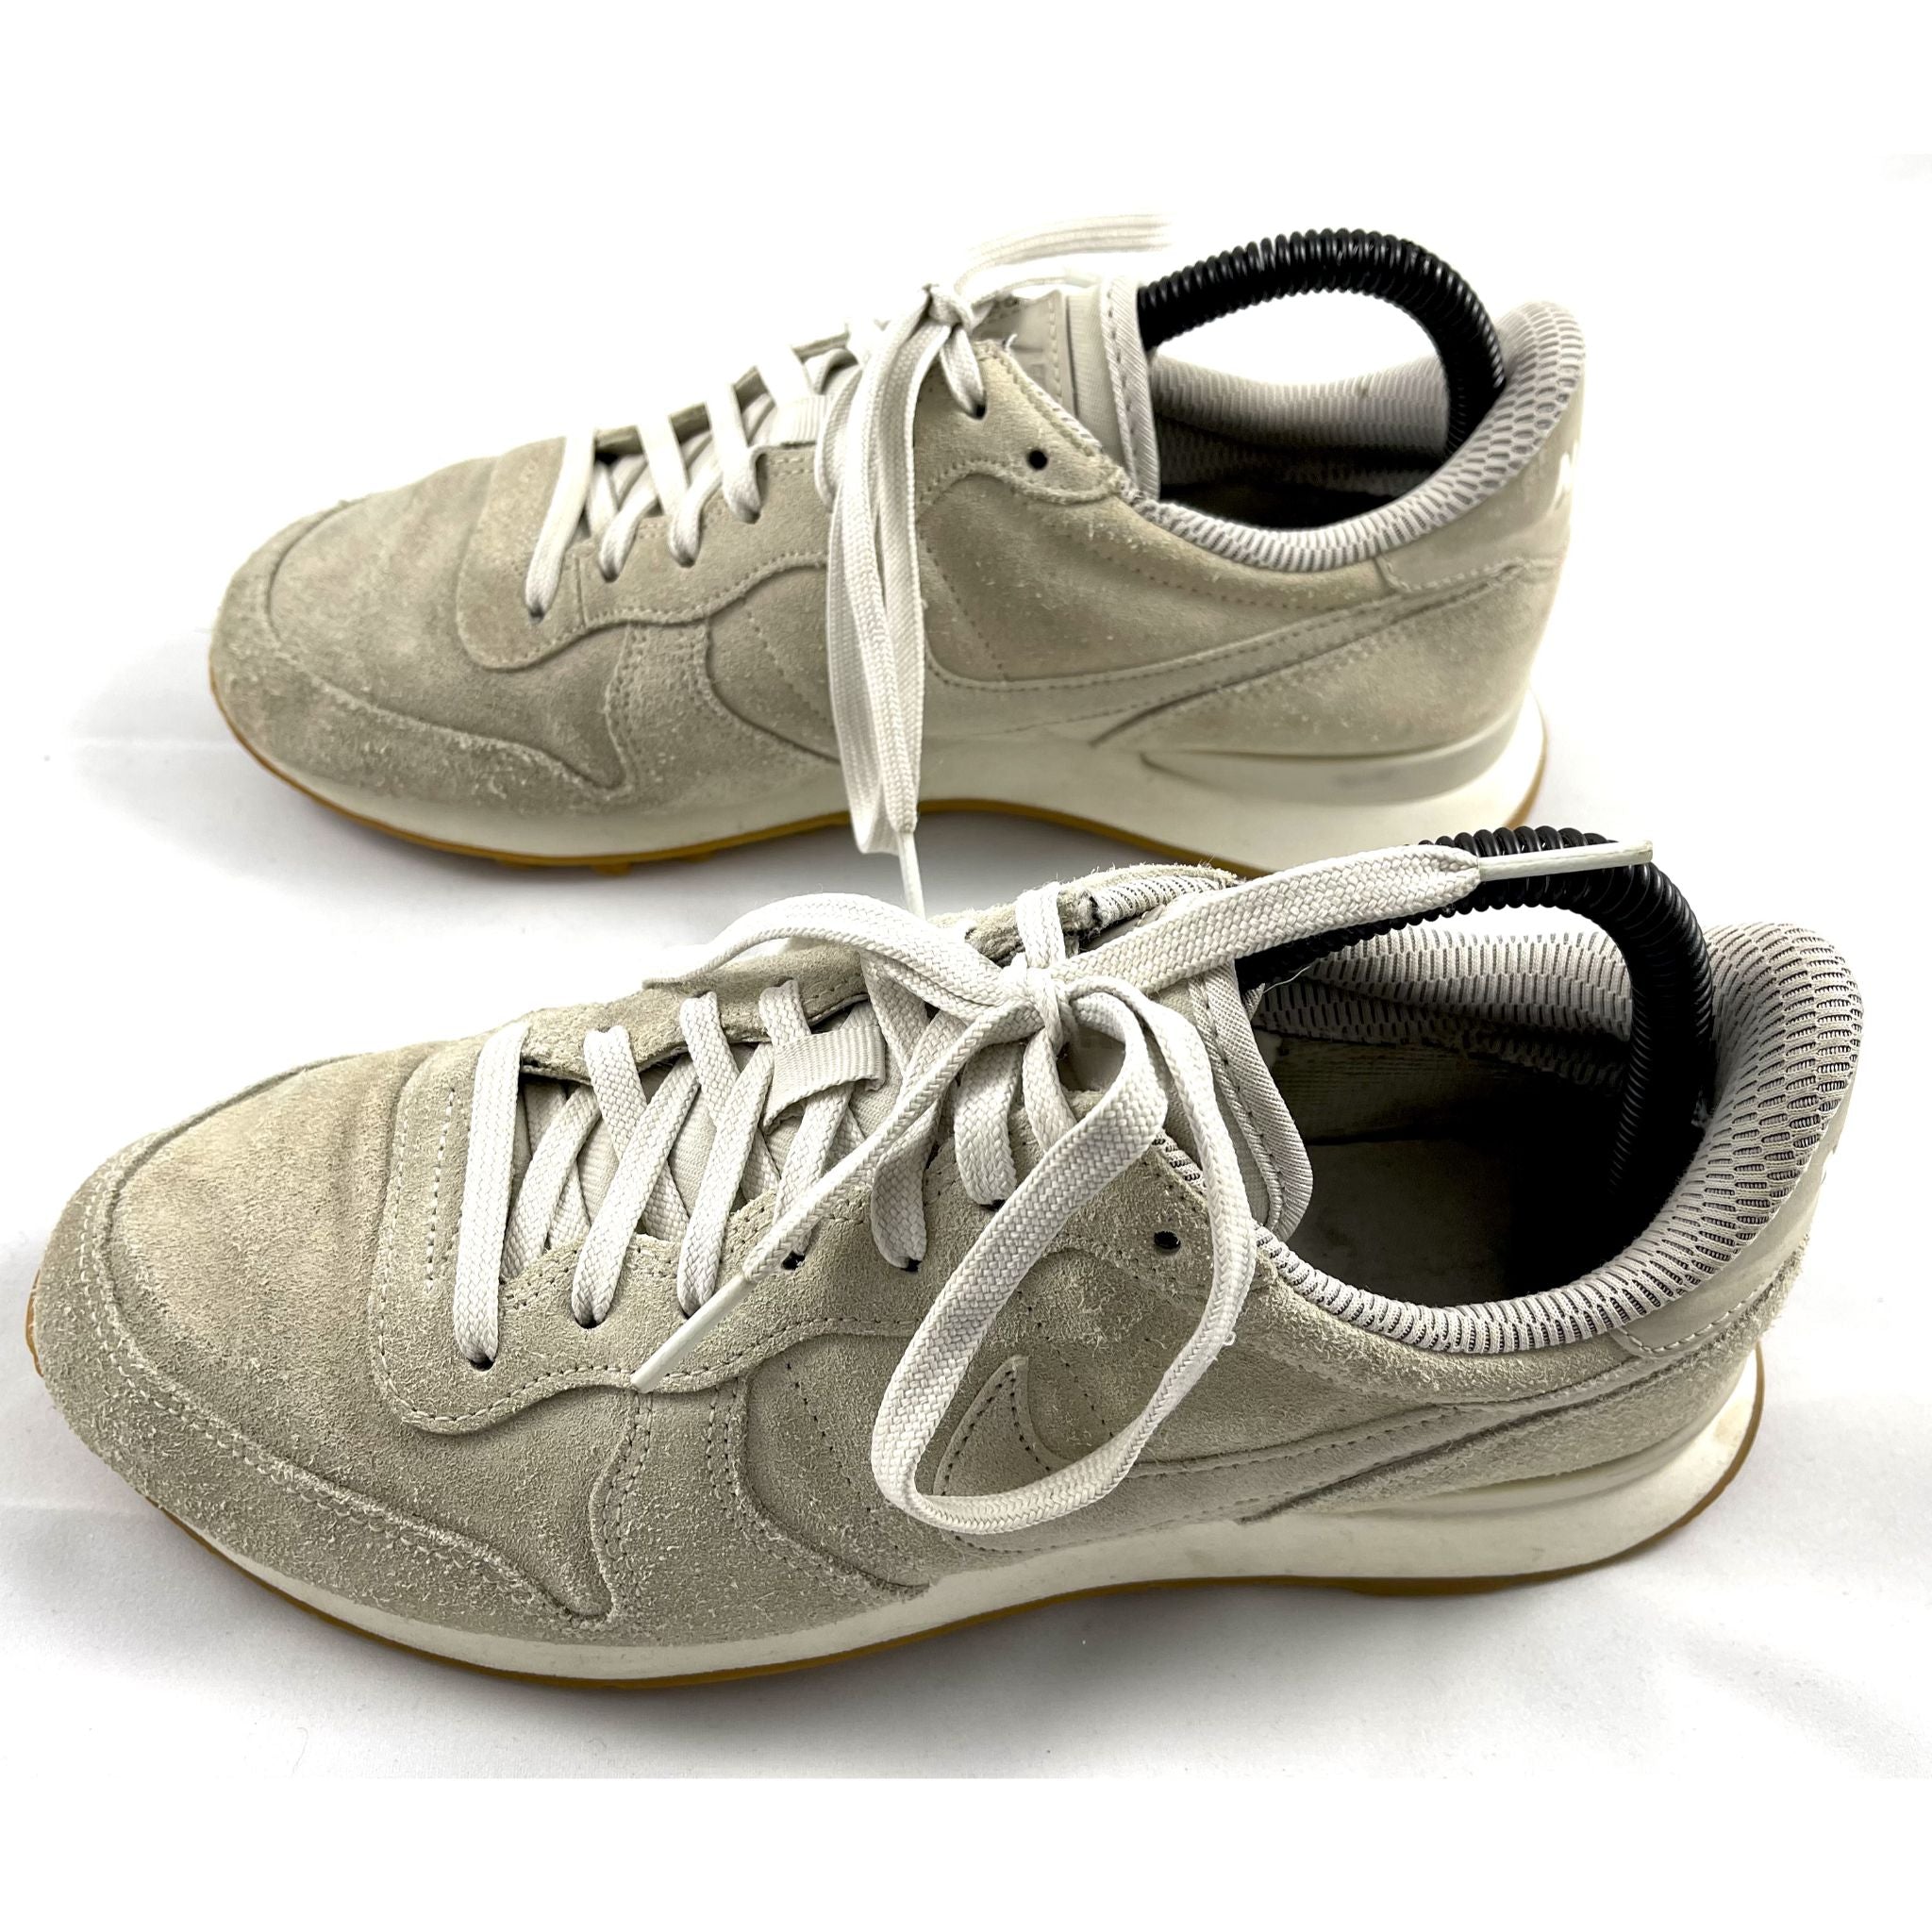 Preloved sneakers